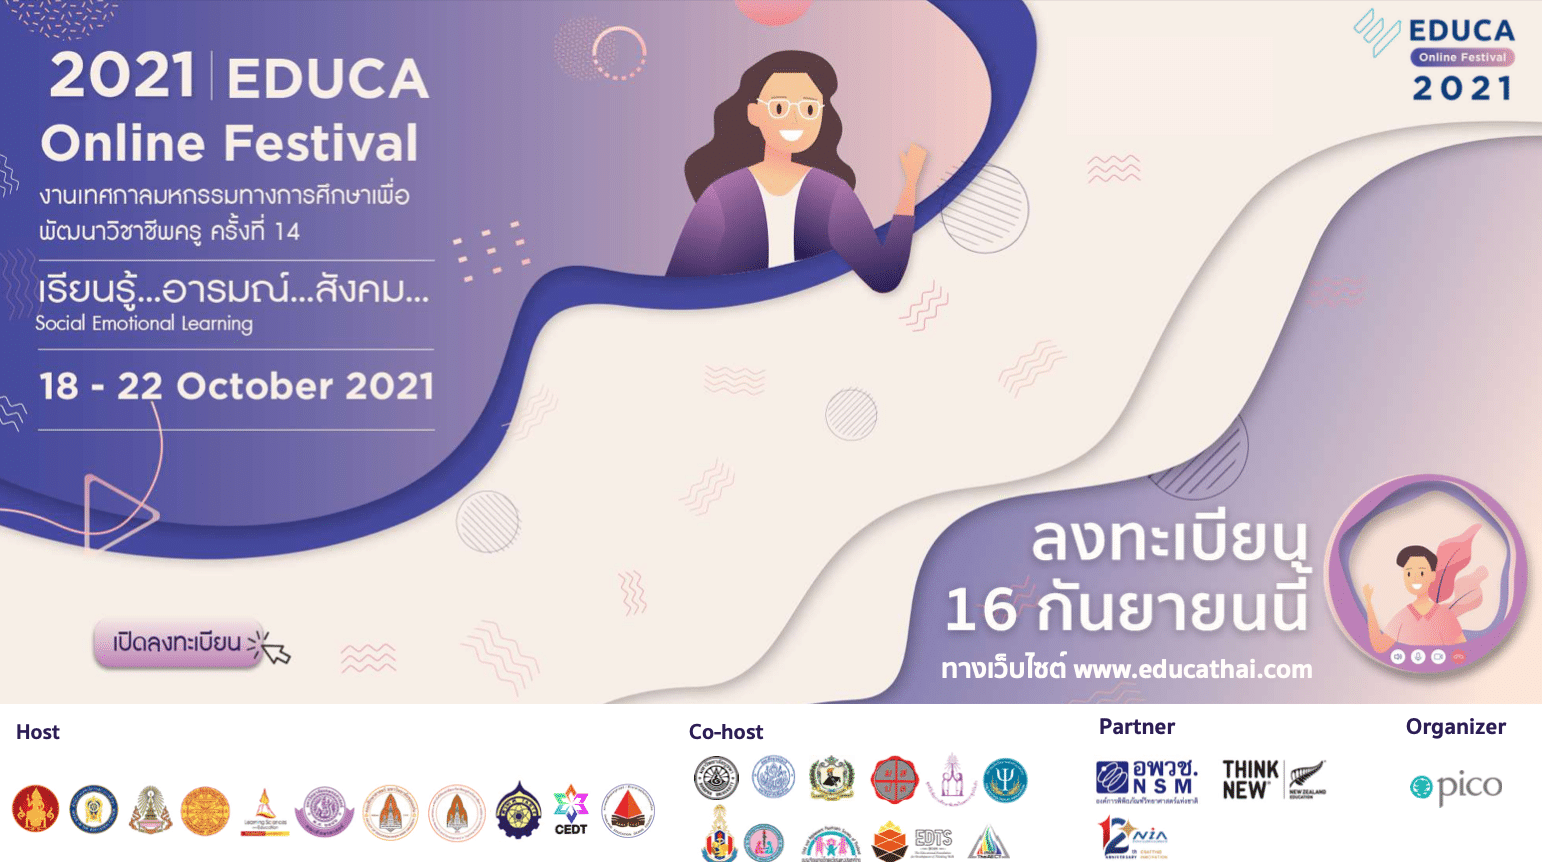 ขอเชิญร่วมงาน EDUCA2021 EDUCA Online Festival 2021 ครั้งที่ 14 จัดในวันที่ 18 – 22 ตุลาคม 2564 เริ่มเปิดลงทะเบียน 16 กันยายน 2564